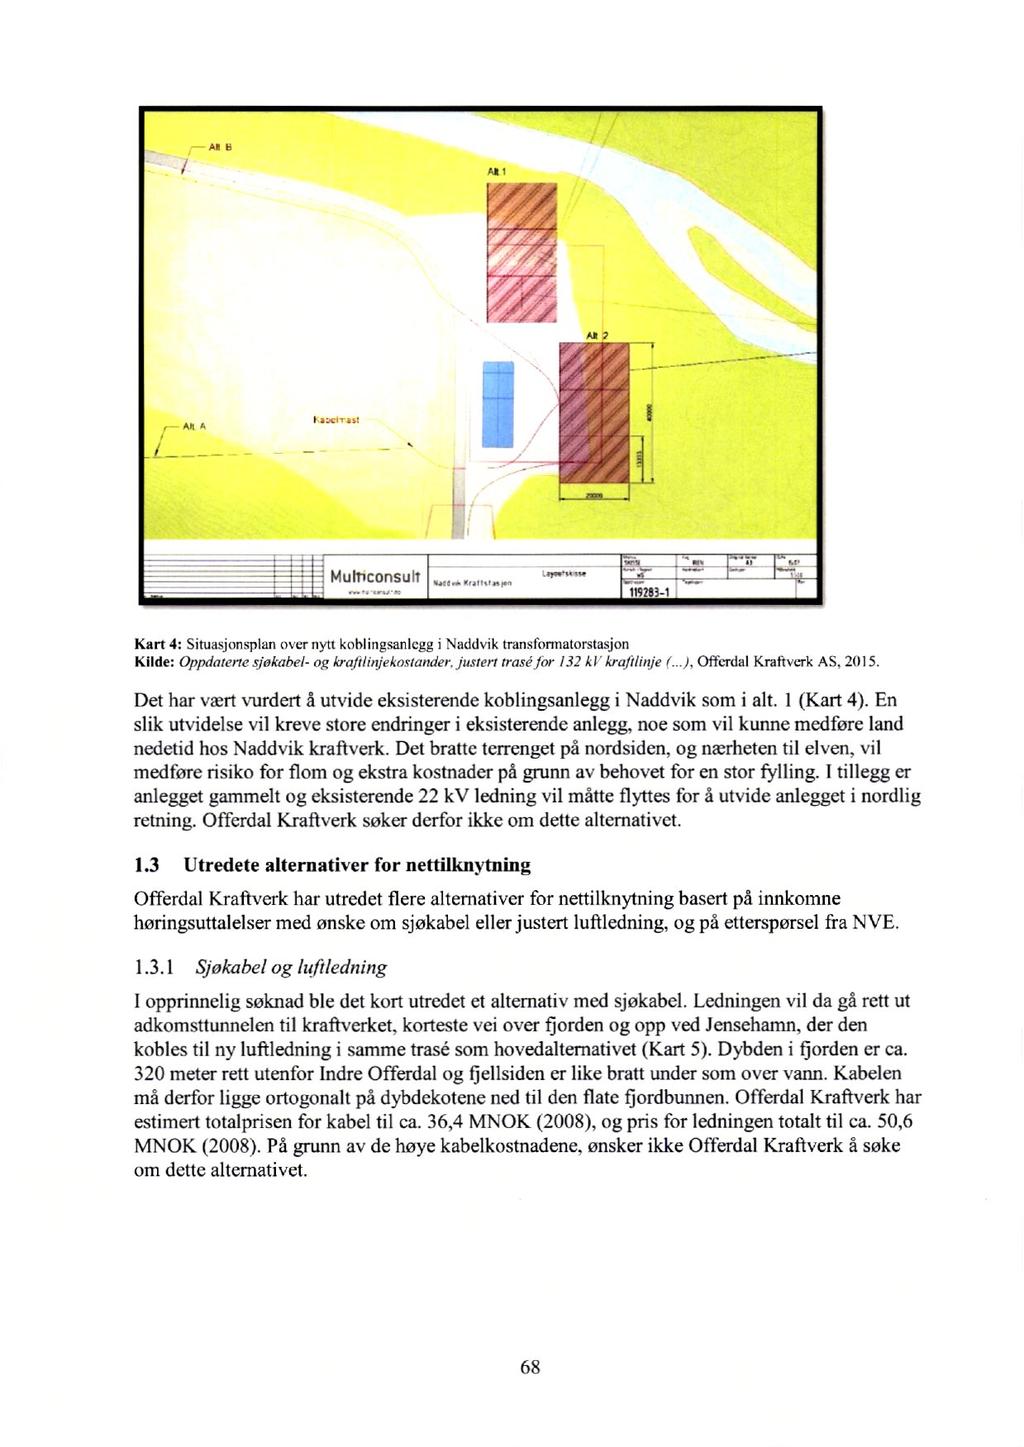 I Mulnconsull 119263-1 Kart 4: Situasjonsplan over nytt koblingsanlegg i Naddvik transfonnatorstasjon Kilde: Oppdaterte sjakahel- og krafflinjekostander.